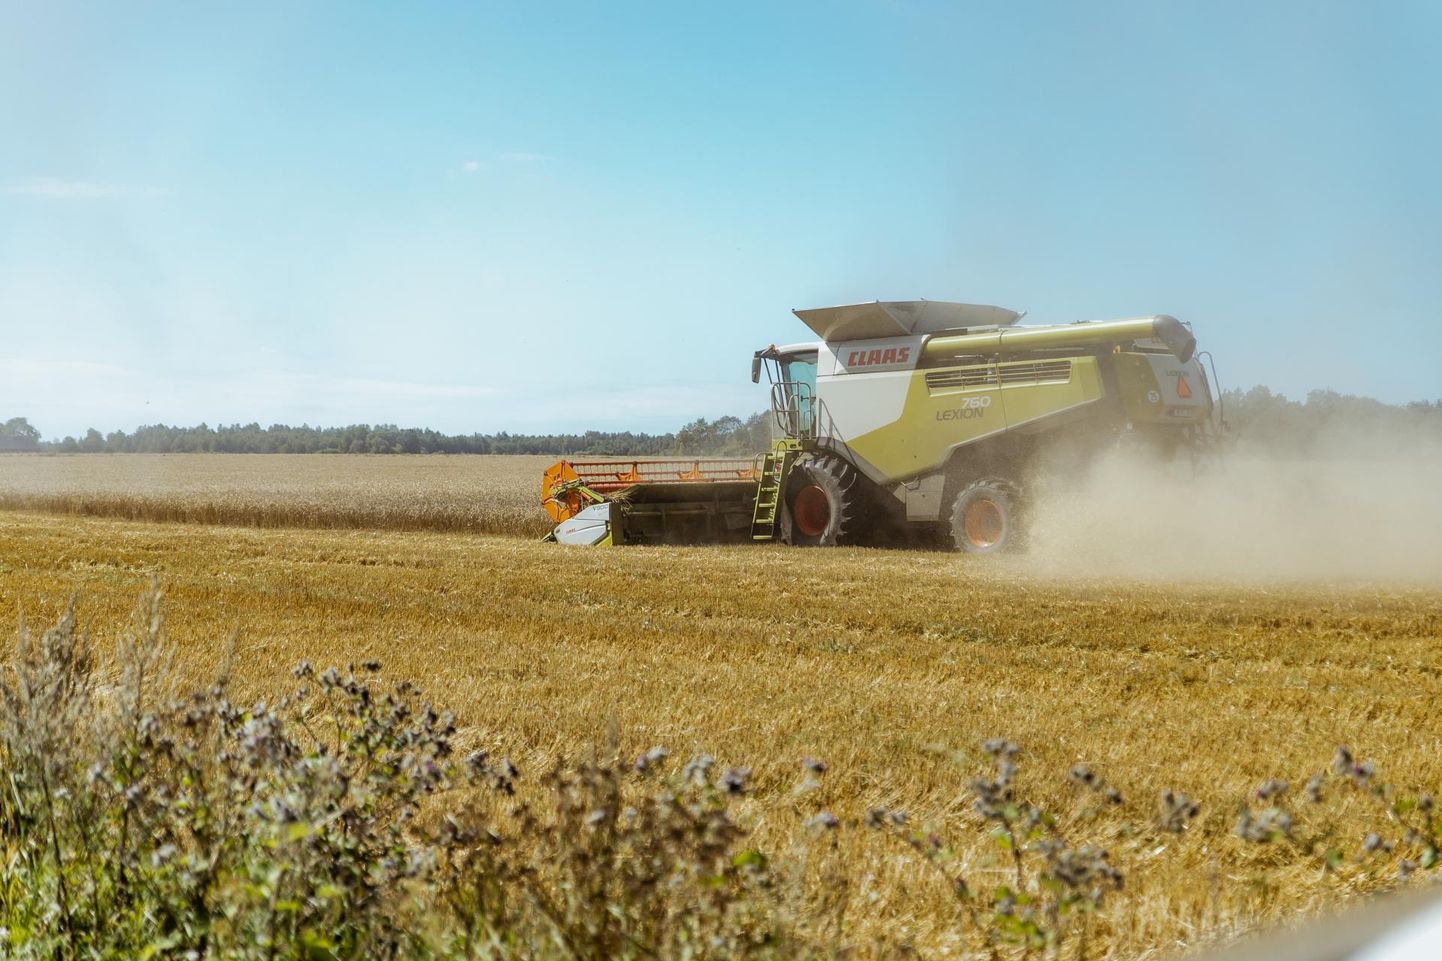 Eelmise aasta teraviljasaak oli 77% suurem kui 2018. aastal ja 6% kõrgem kui 2015. aastal, mil ilm samuti põllumehi hoidis.